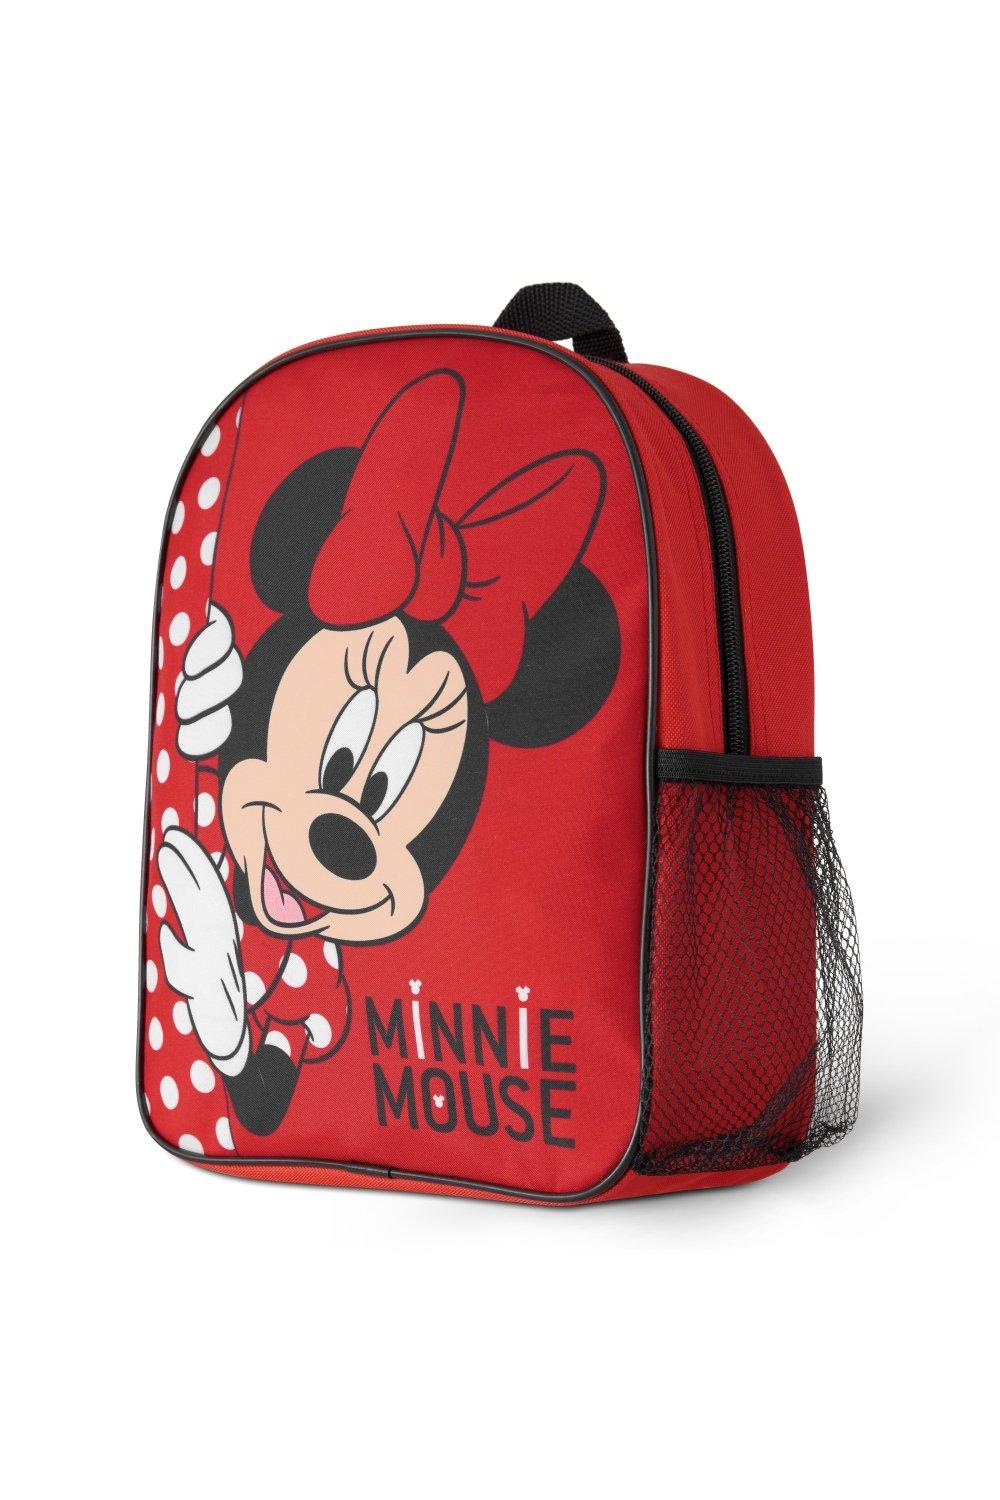 Рюкзак для девочек Минни Маус Disney, красный рюкзак минни маус mickey mouse черный 1